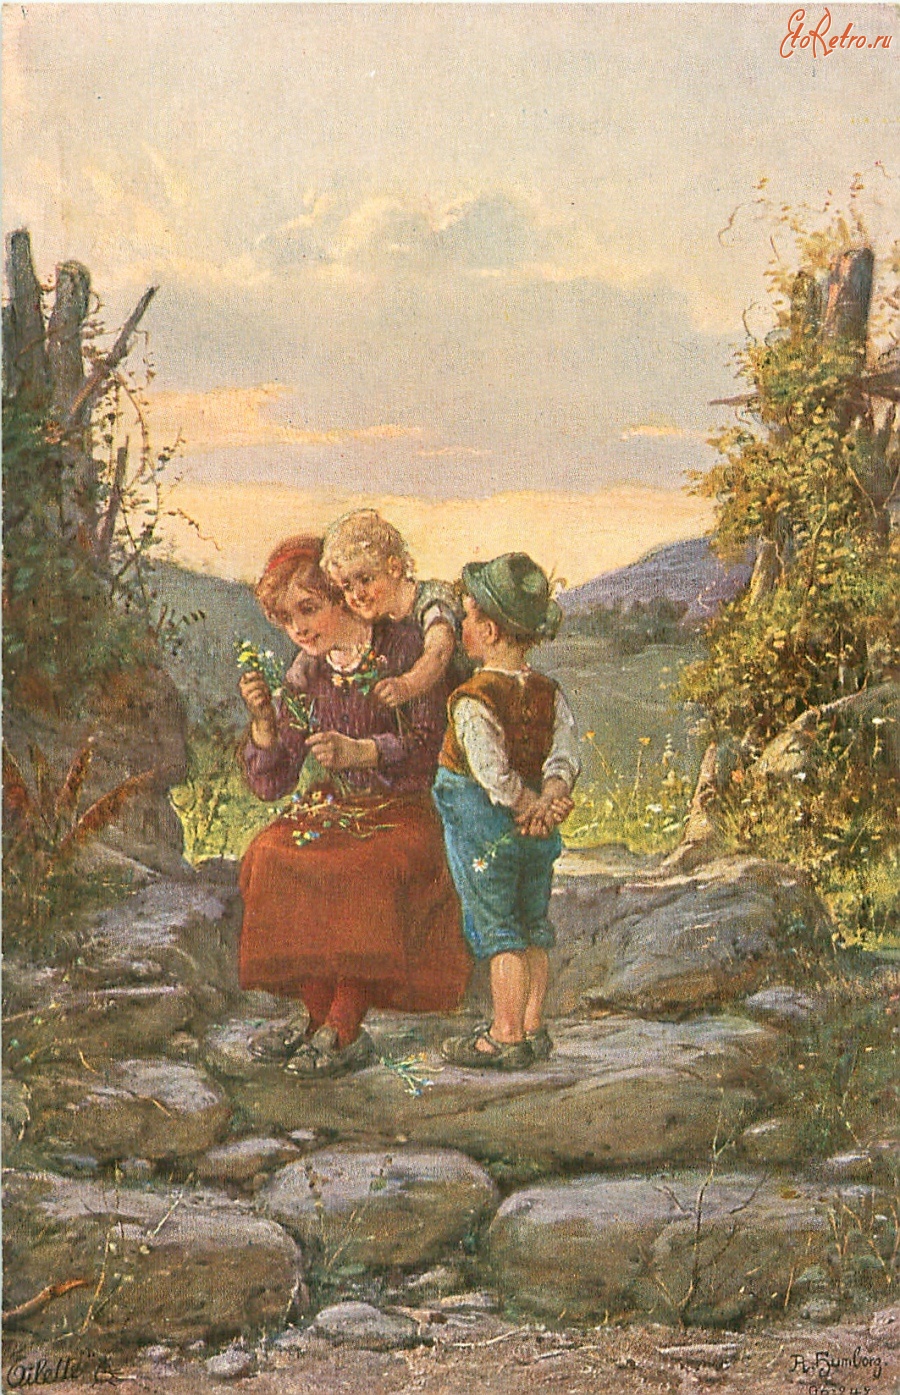 Ретро открытки - Женщина и дети на фоне горного пейзажа